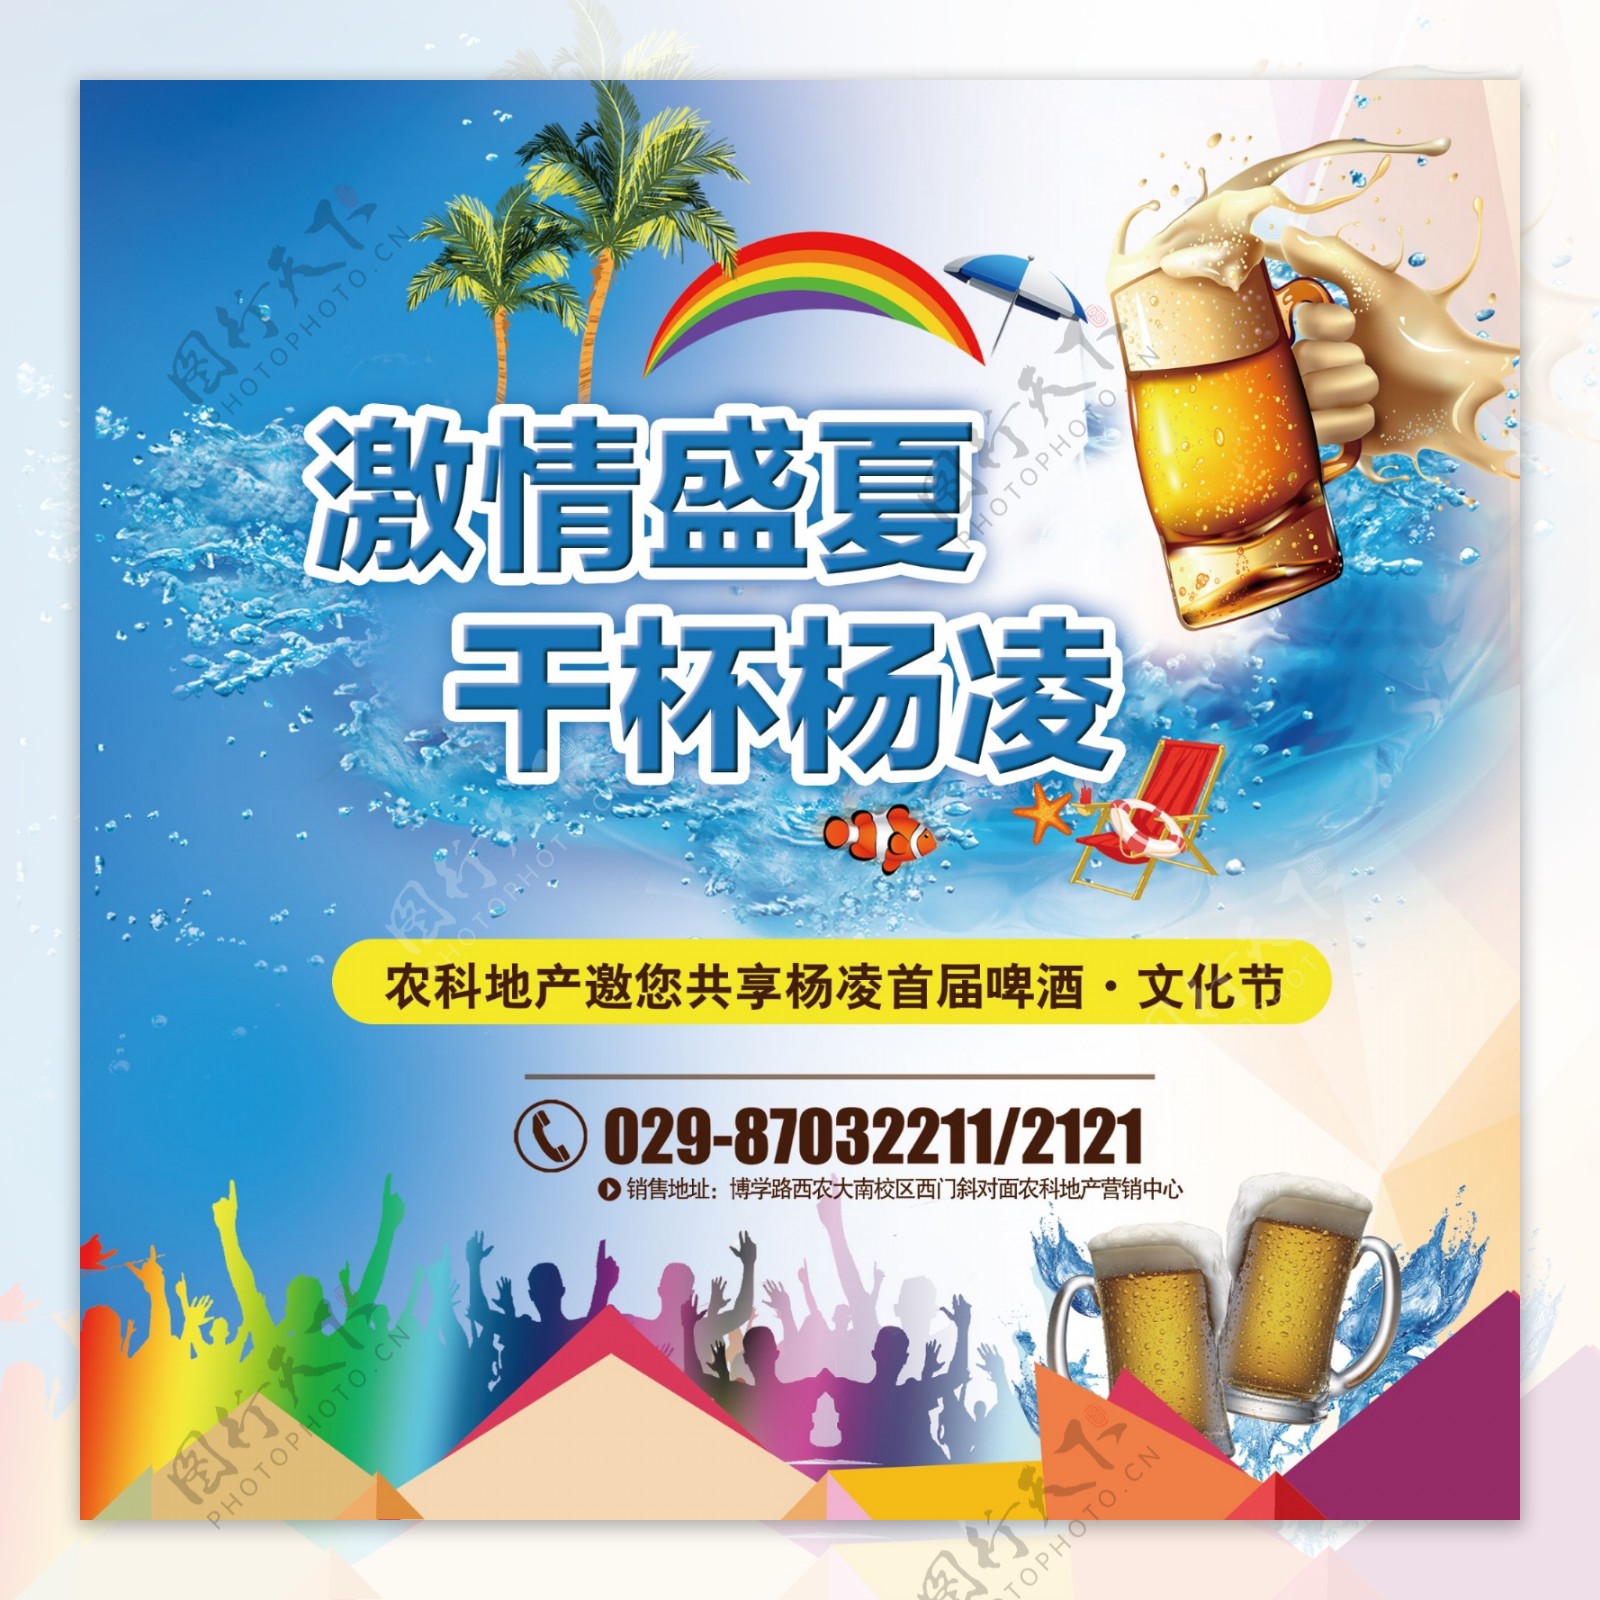 夏季啤酒节活动海报设计PSD源文件